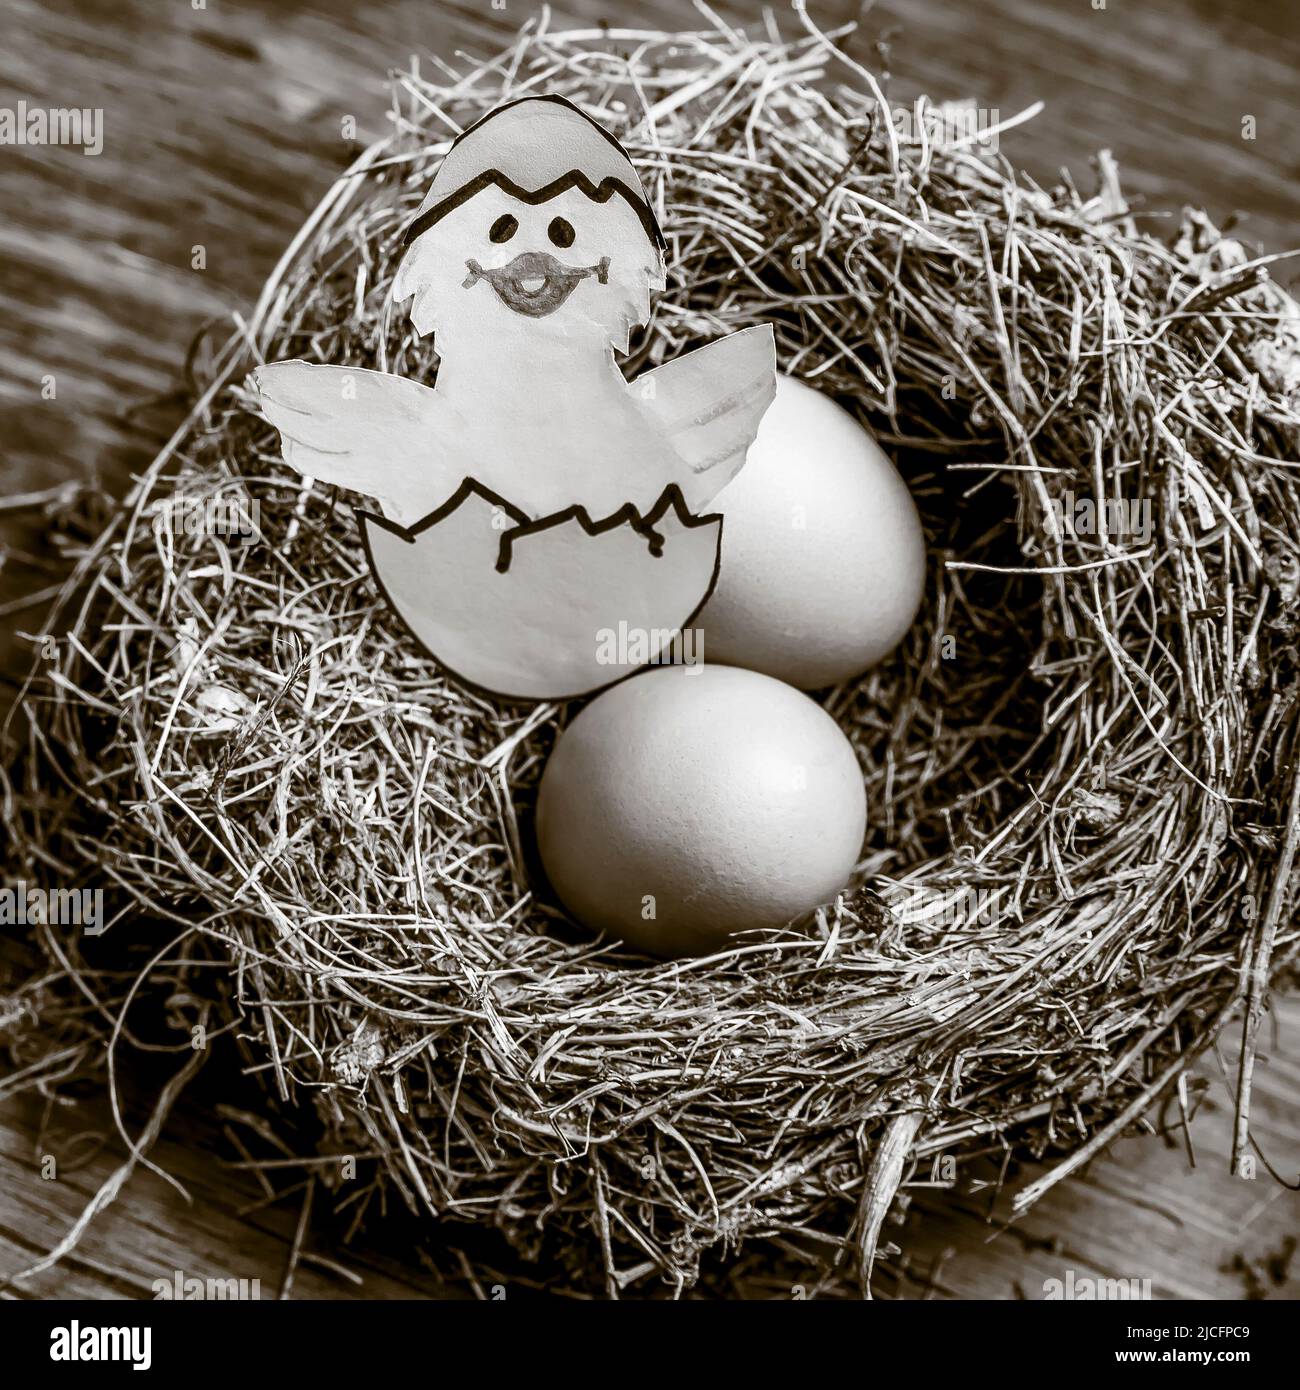 Oeufs dans un nid avec un dessin d'un poussin sortant de l'oeuf, en noir et blanc Banque D'Images